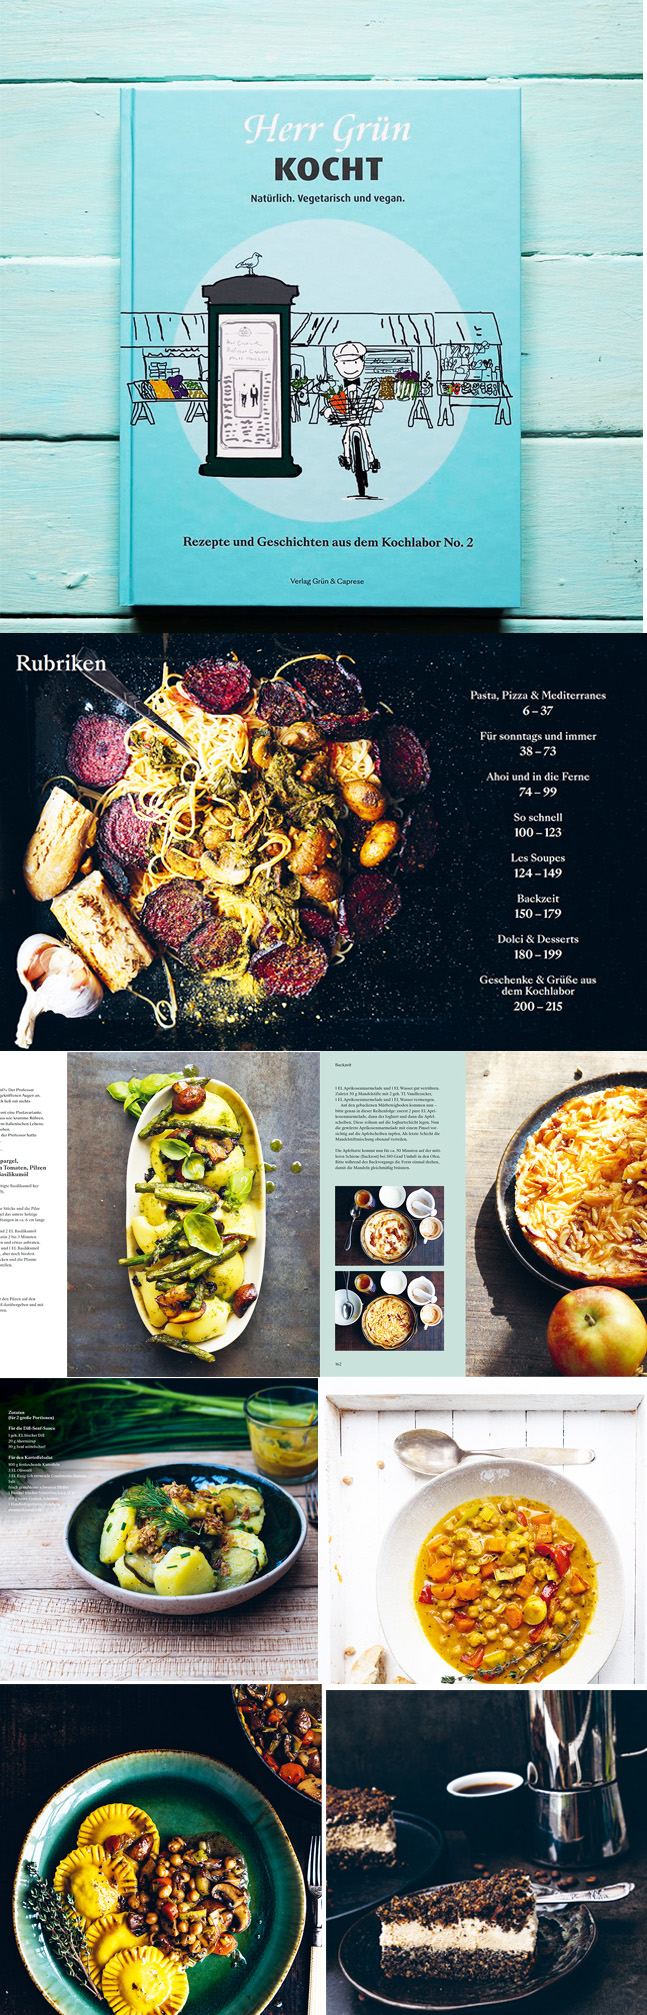 Das neue Herr Grün Kochbuch mit kreativen vegetarischen und veganen Rezepten, die leicht nachzukochen sind